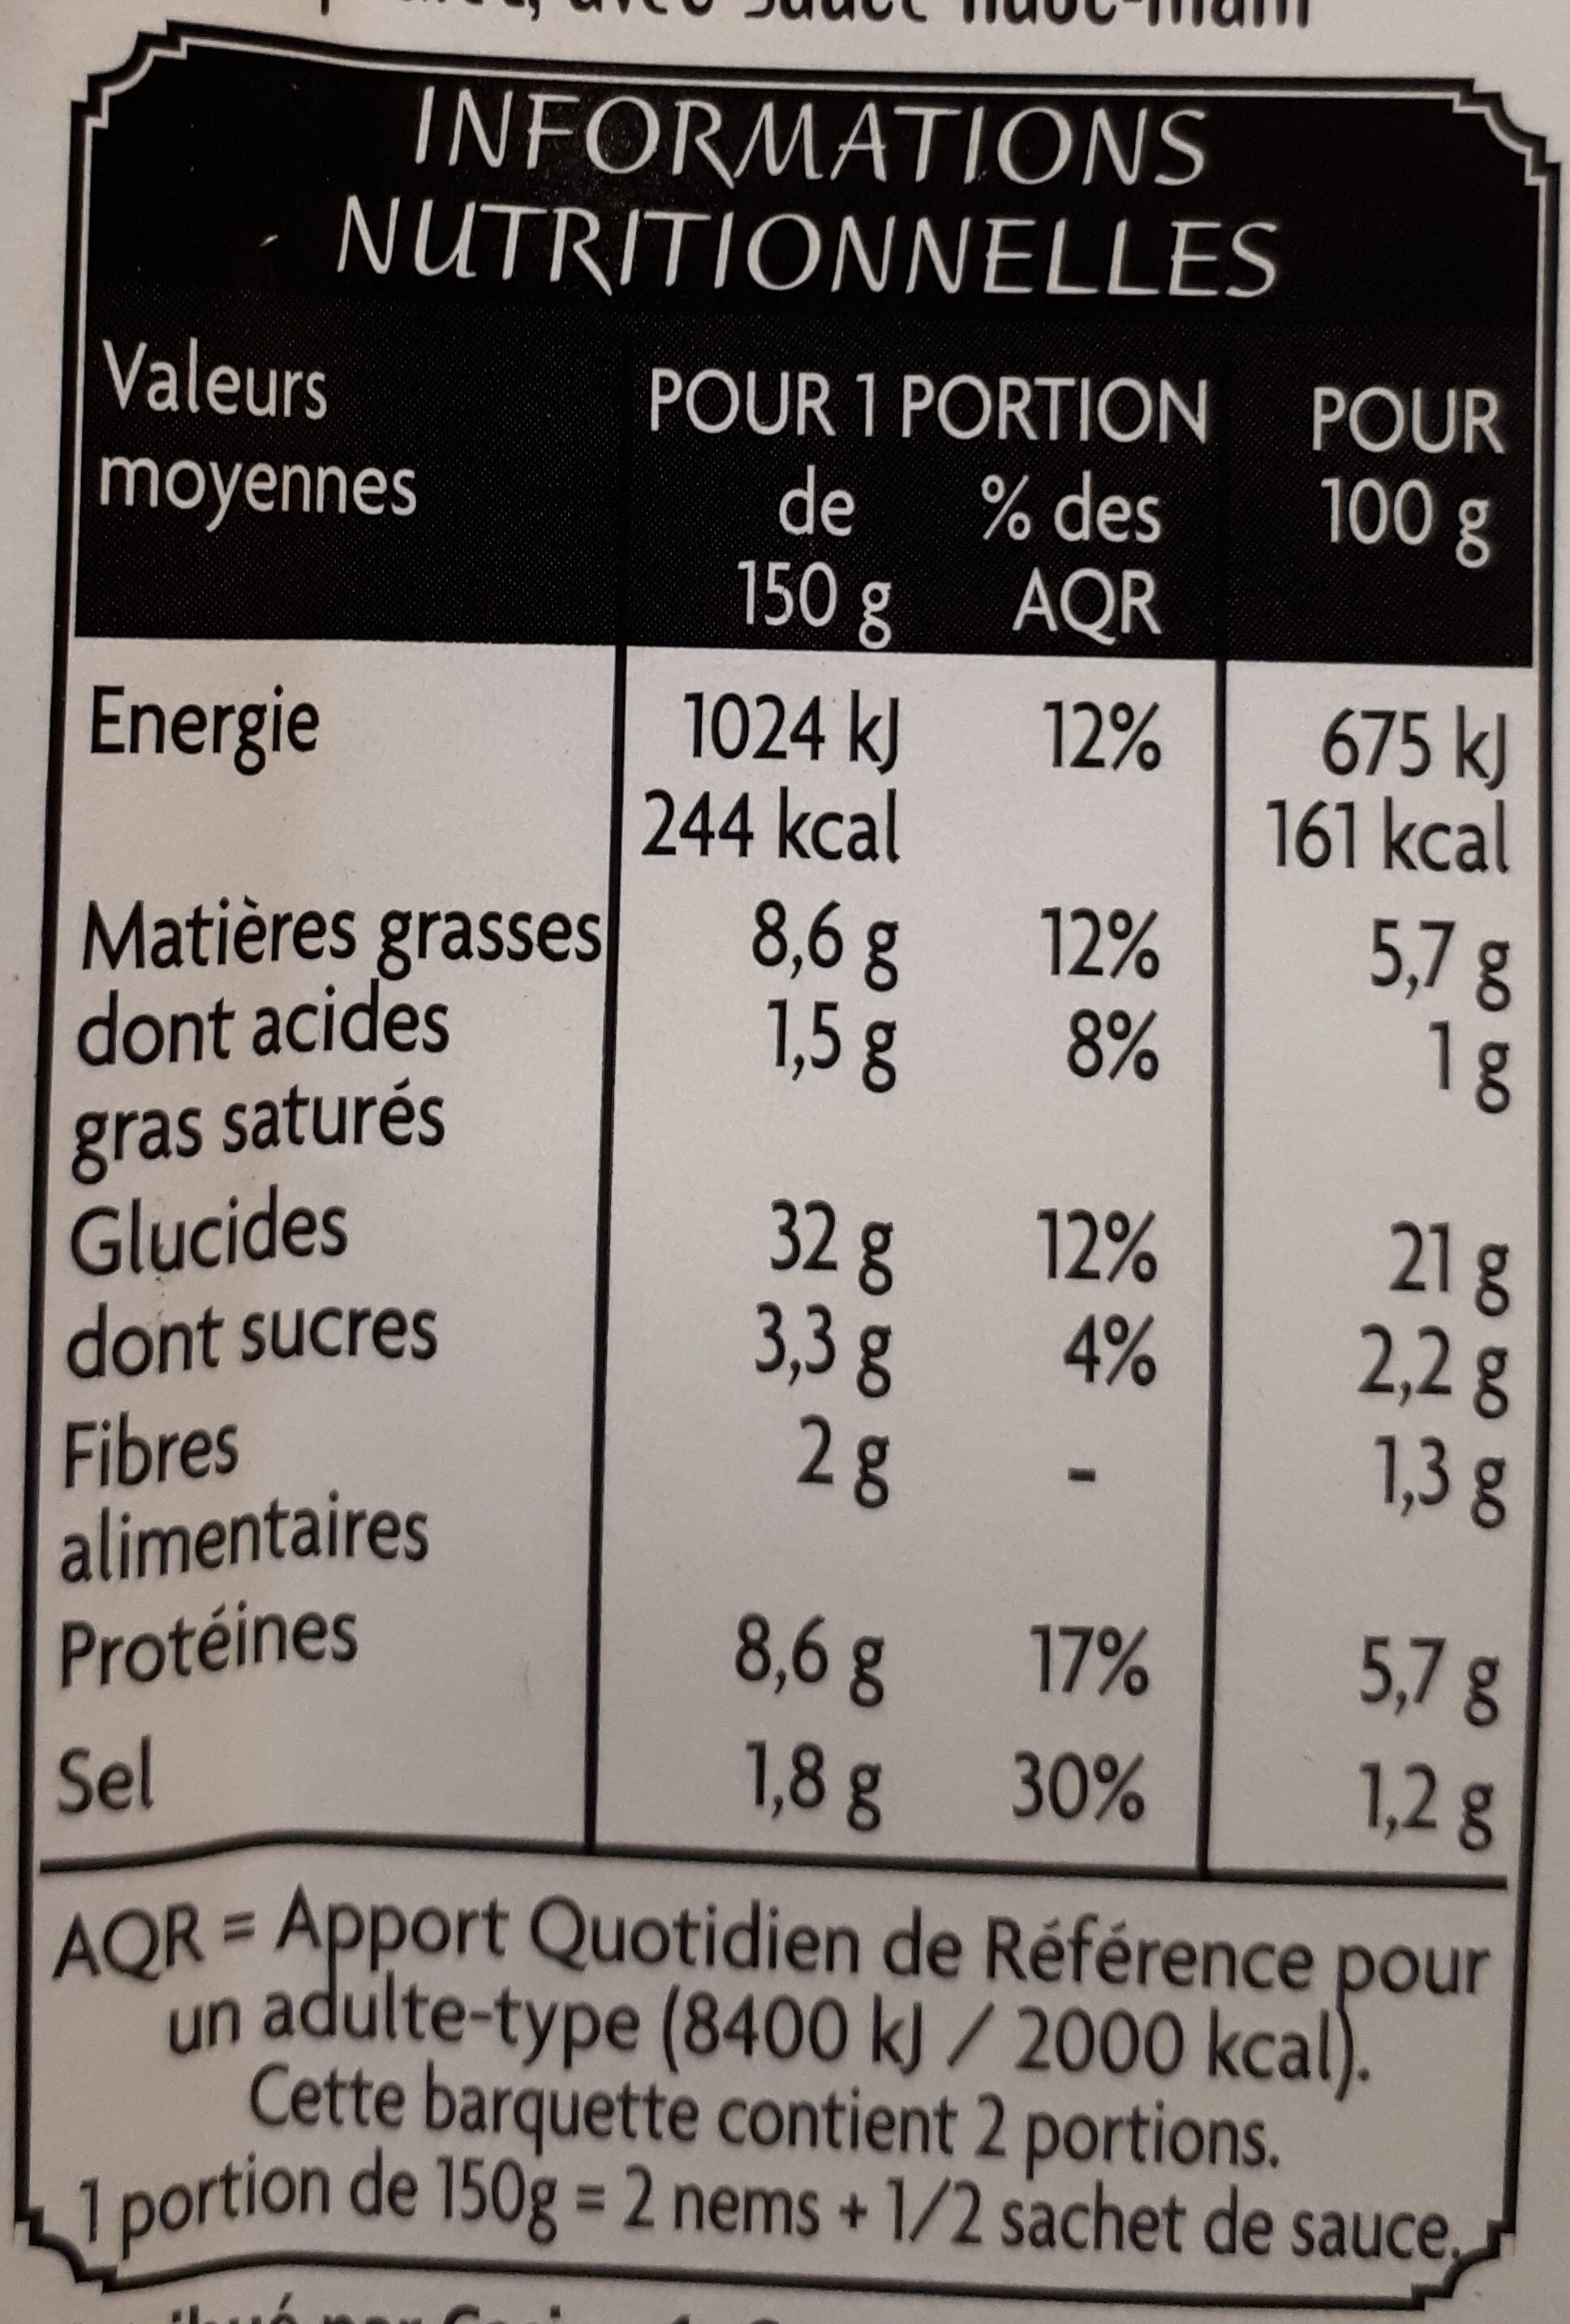 4 NEMS POULET sauce NuocMâm - Nutrition facts - fr